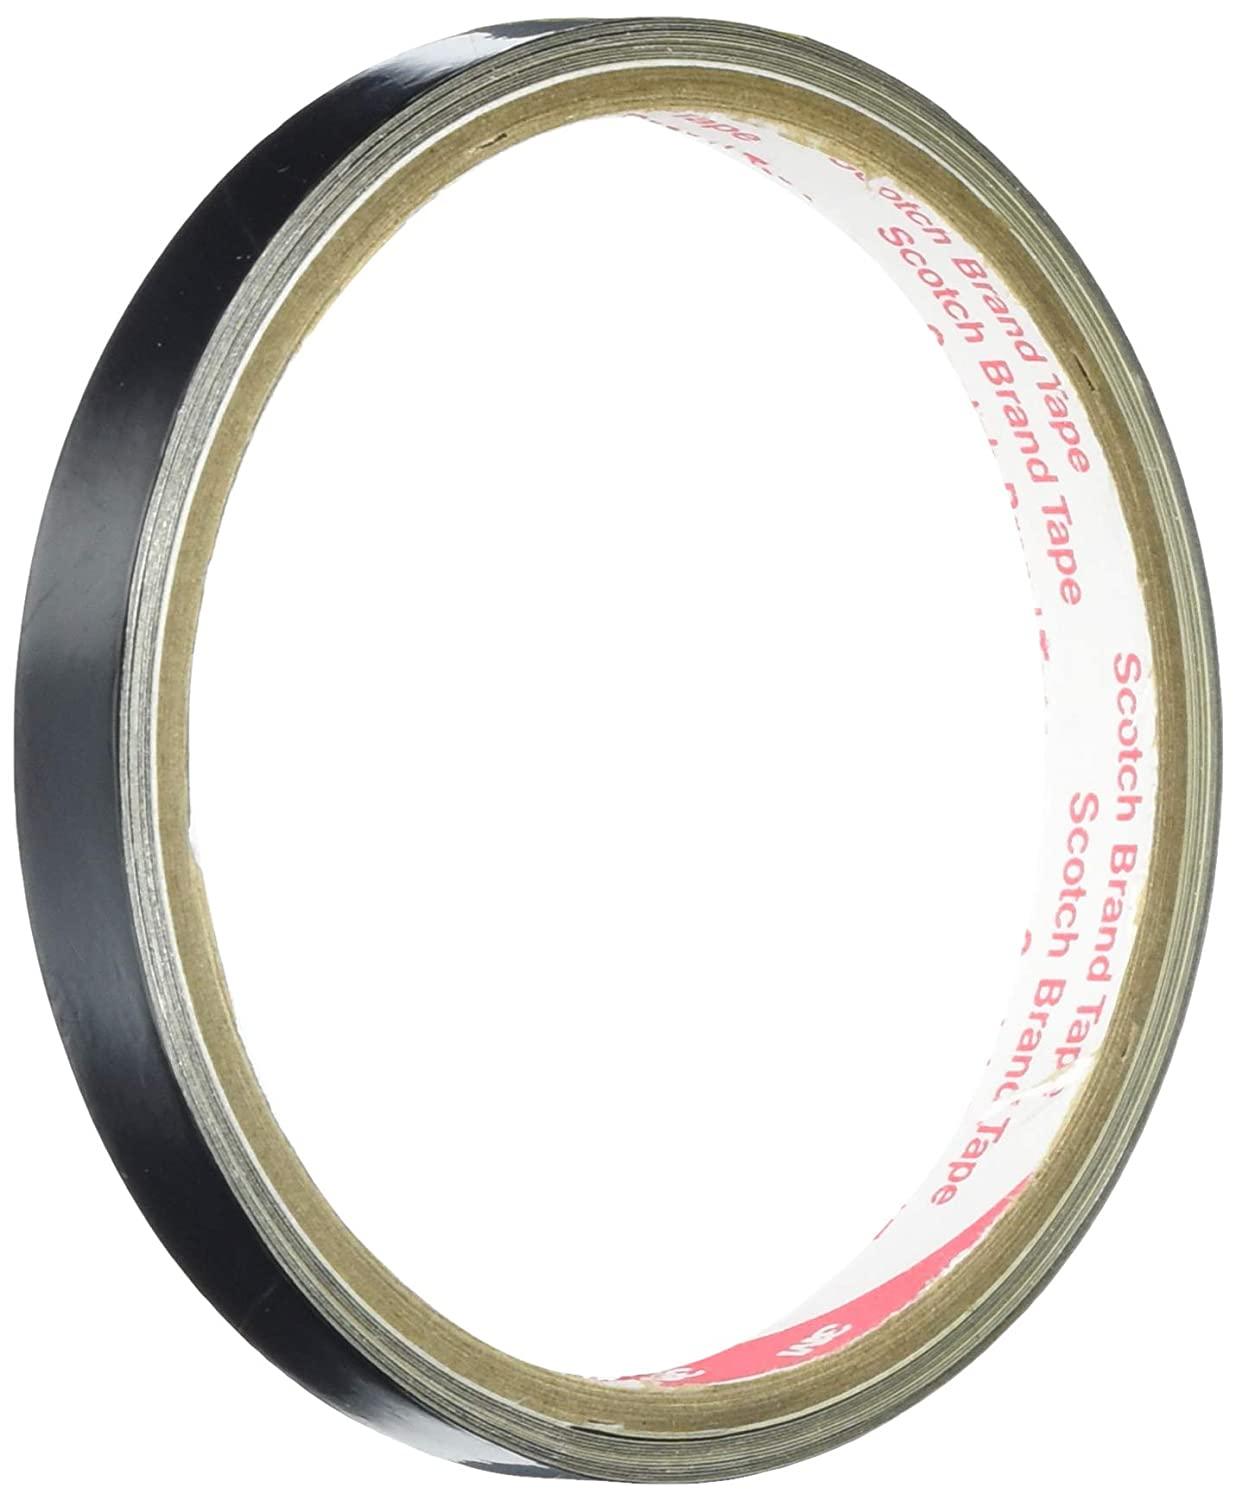  3M 絶縁機能付き黒色導電アルミ箔テープ No.AL-37BLK 10mm幅x3m